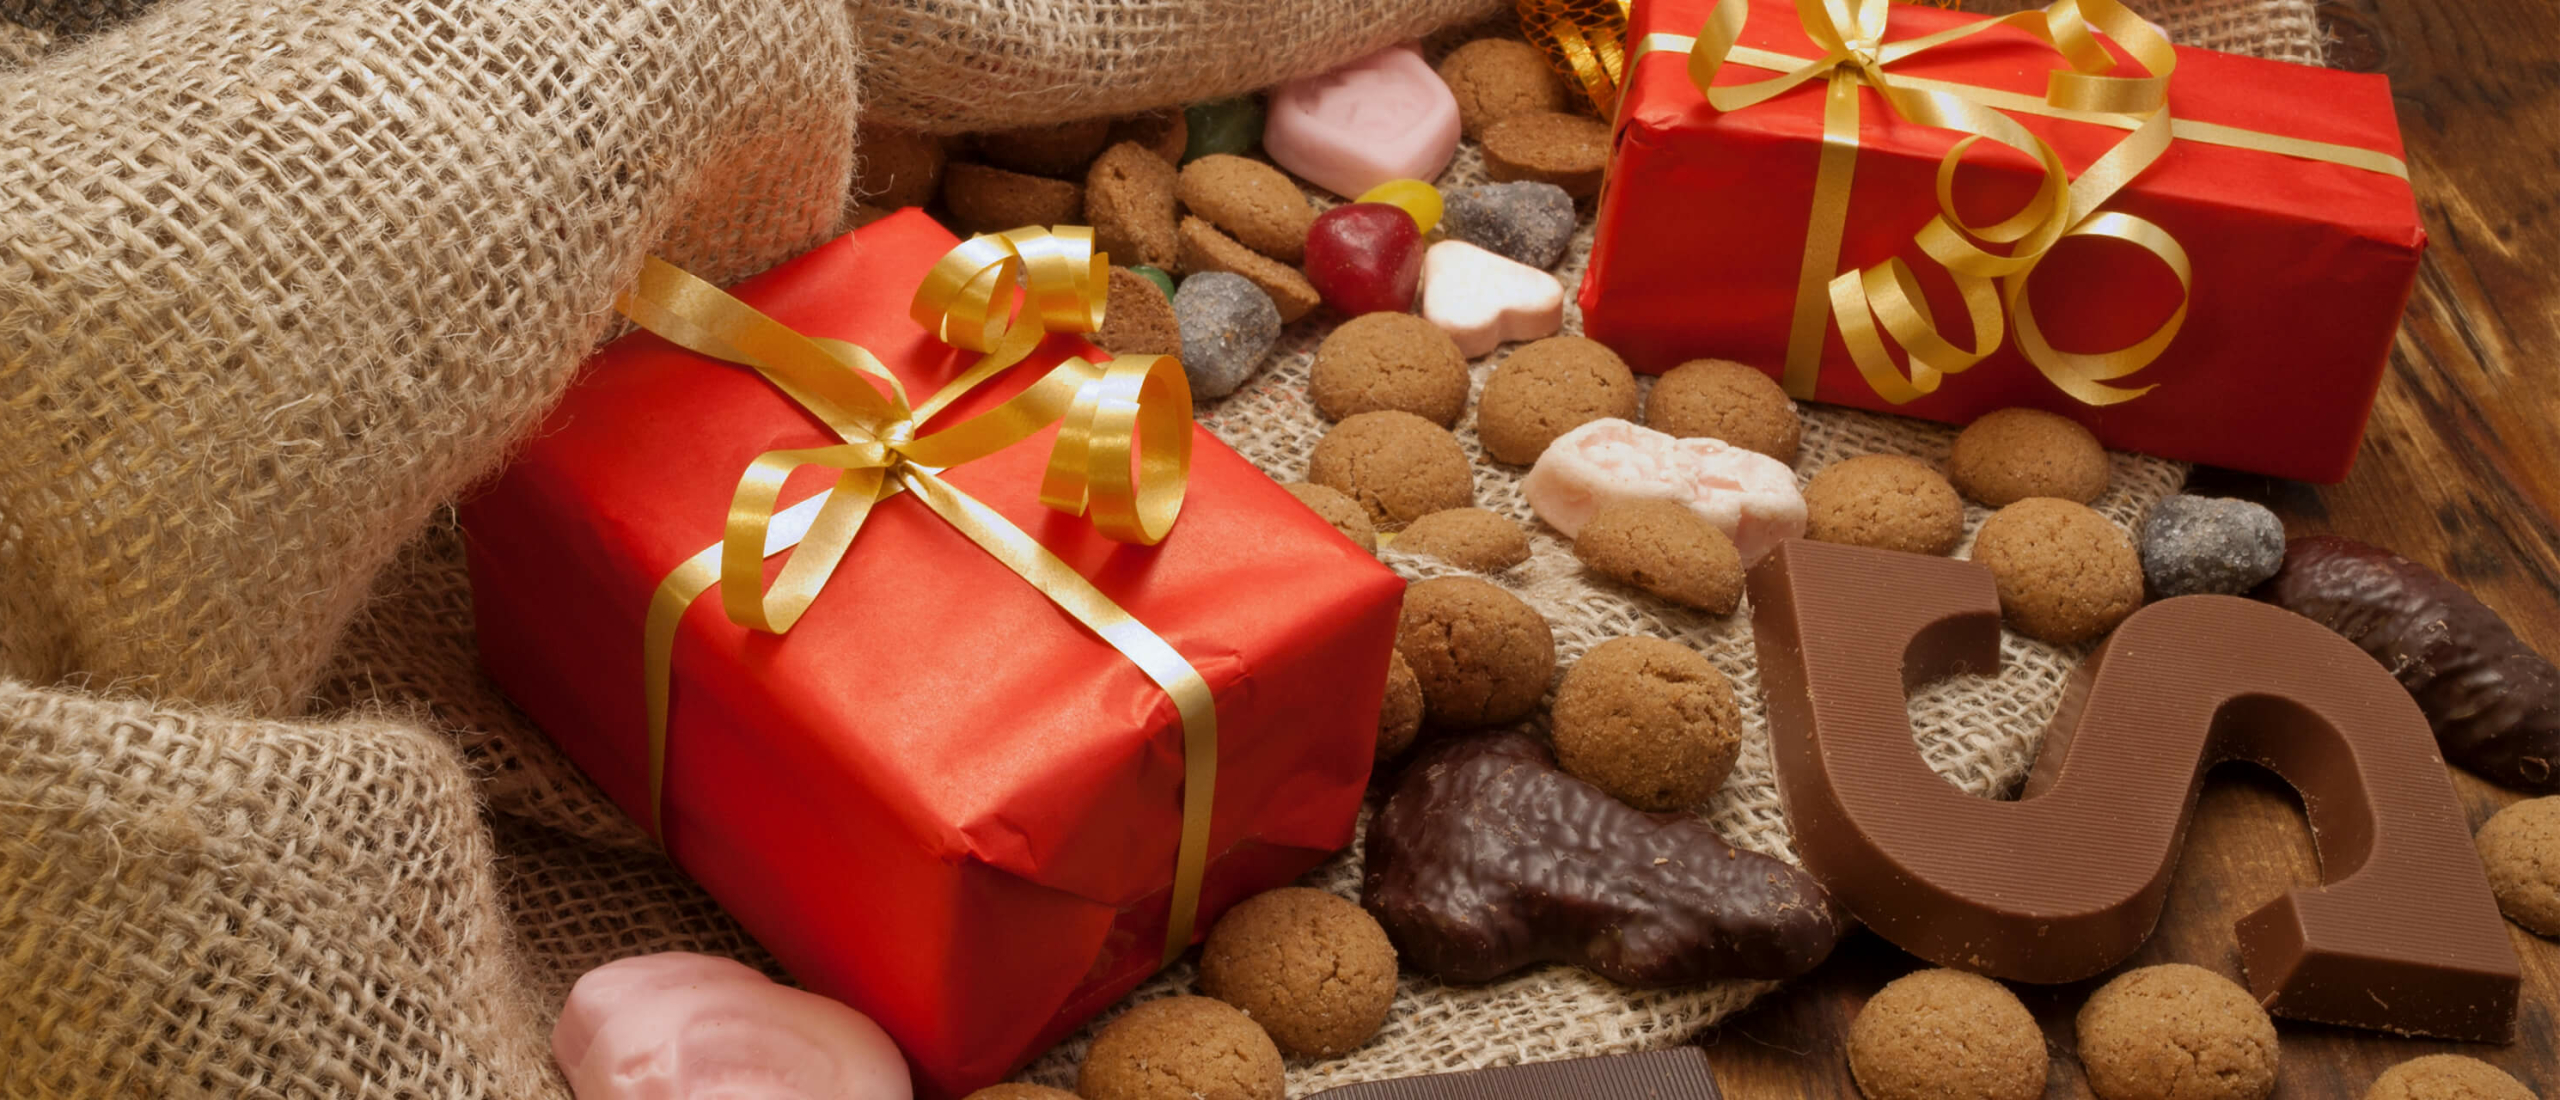 rit bunker Probleem De leukste Sinterklaas cadeautjes voor je ouders, broertje, zus of vriendin